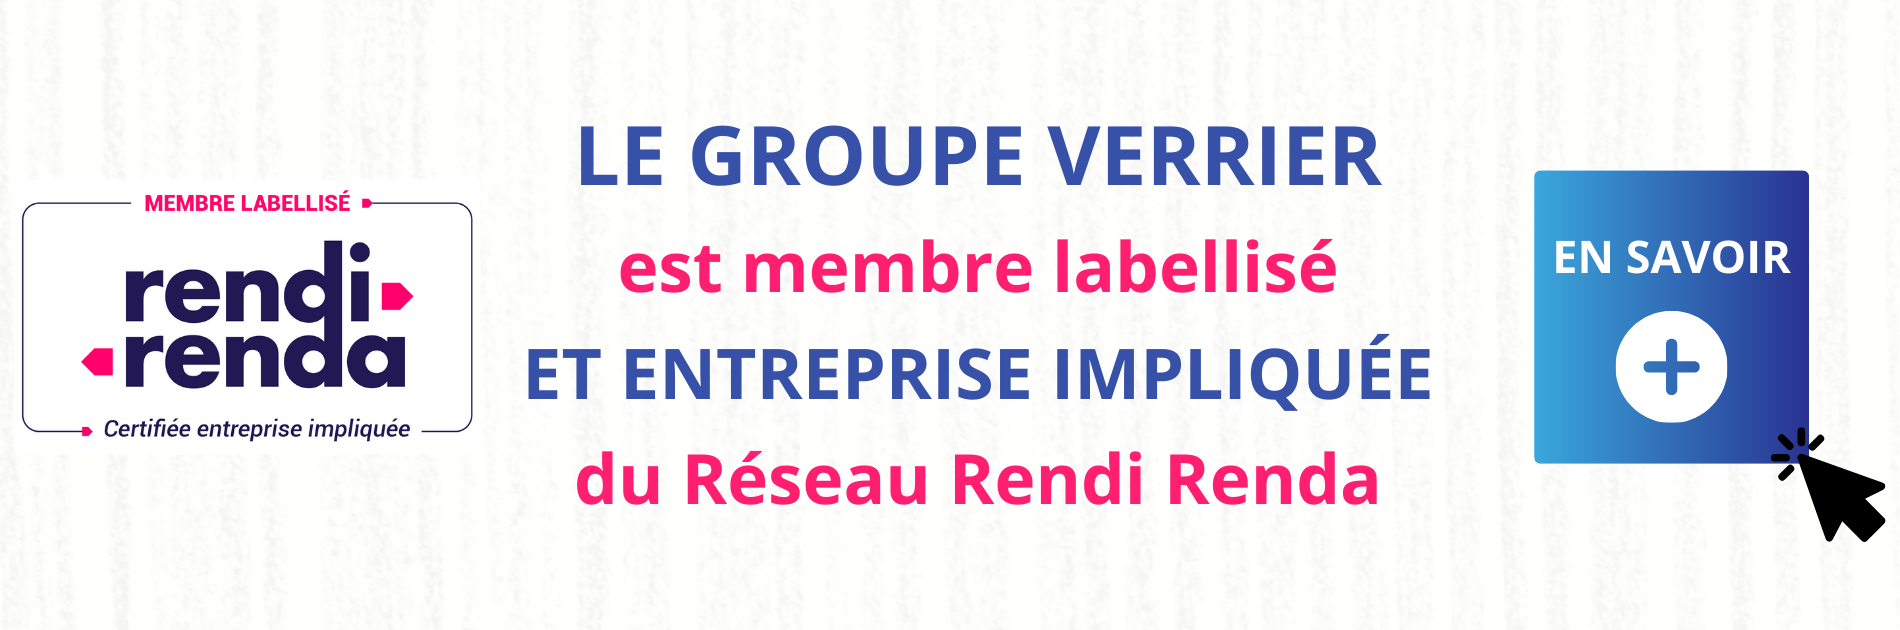 Le groupe Verrier membre labellisé du réseau Rendi Renda